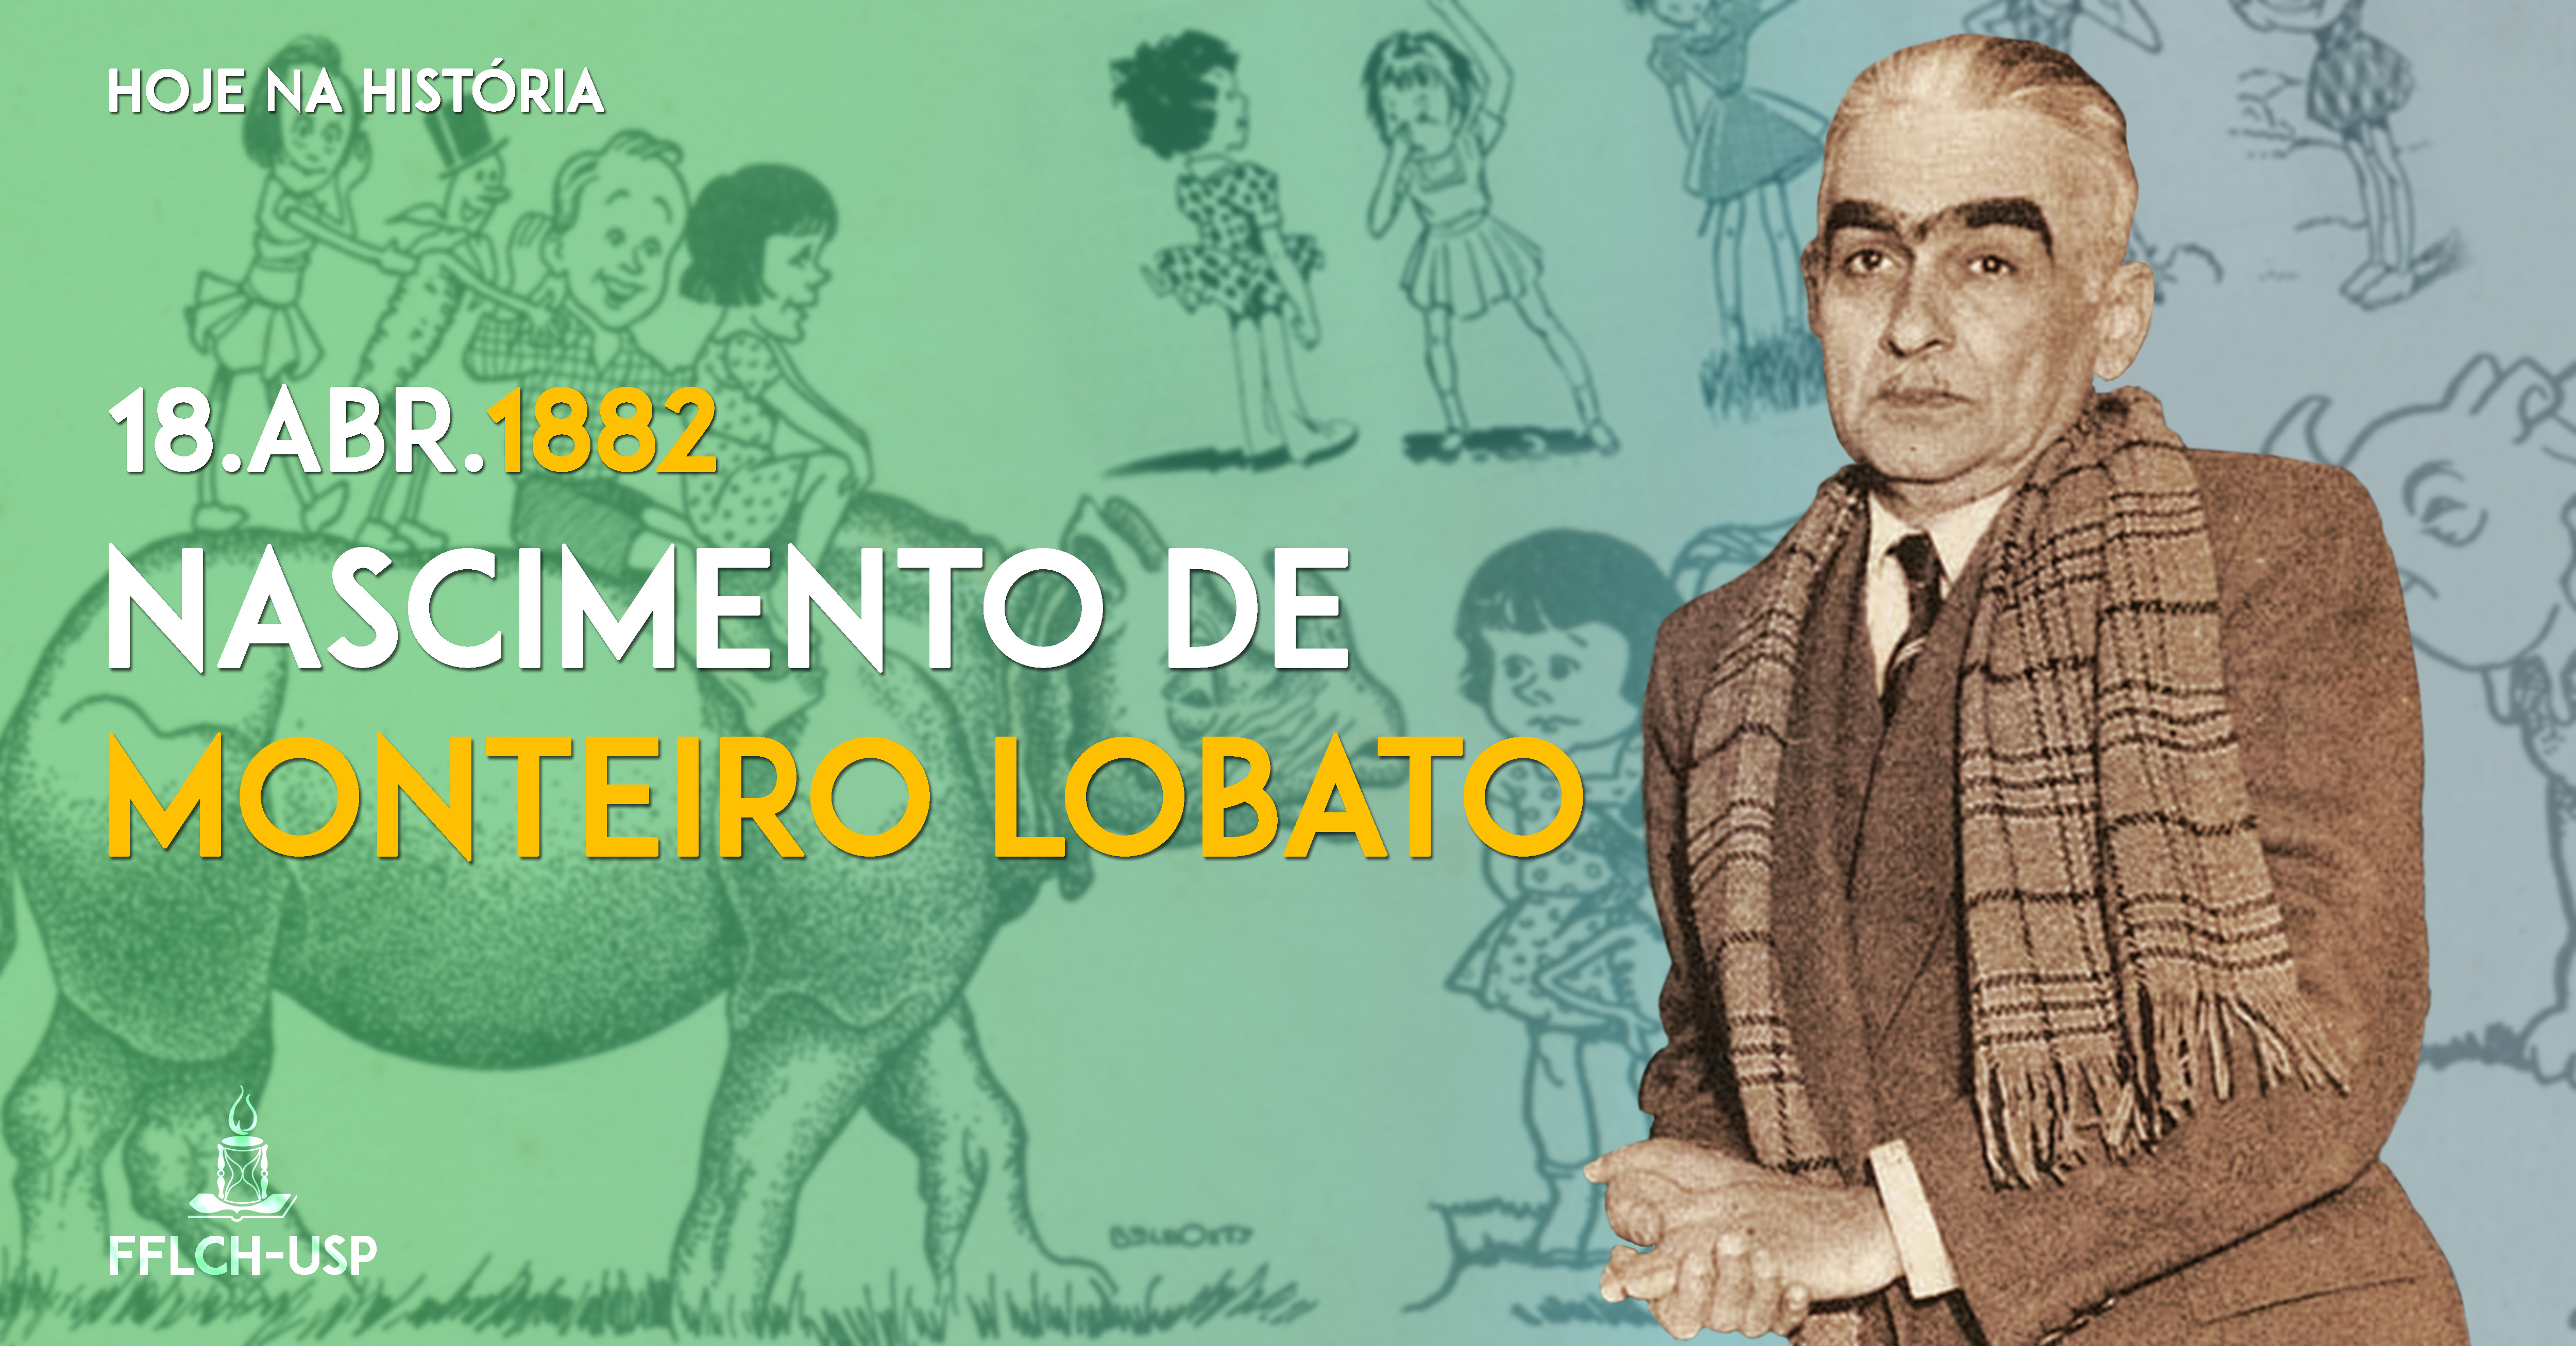 18 de abril de 1882: Nascimento de Monteiro Lobato